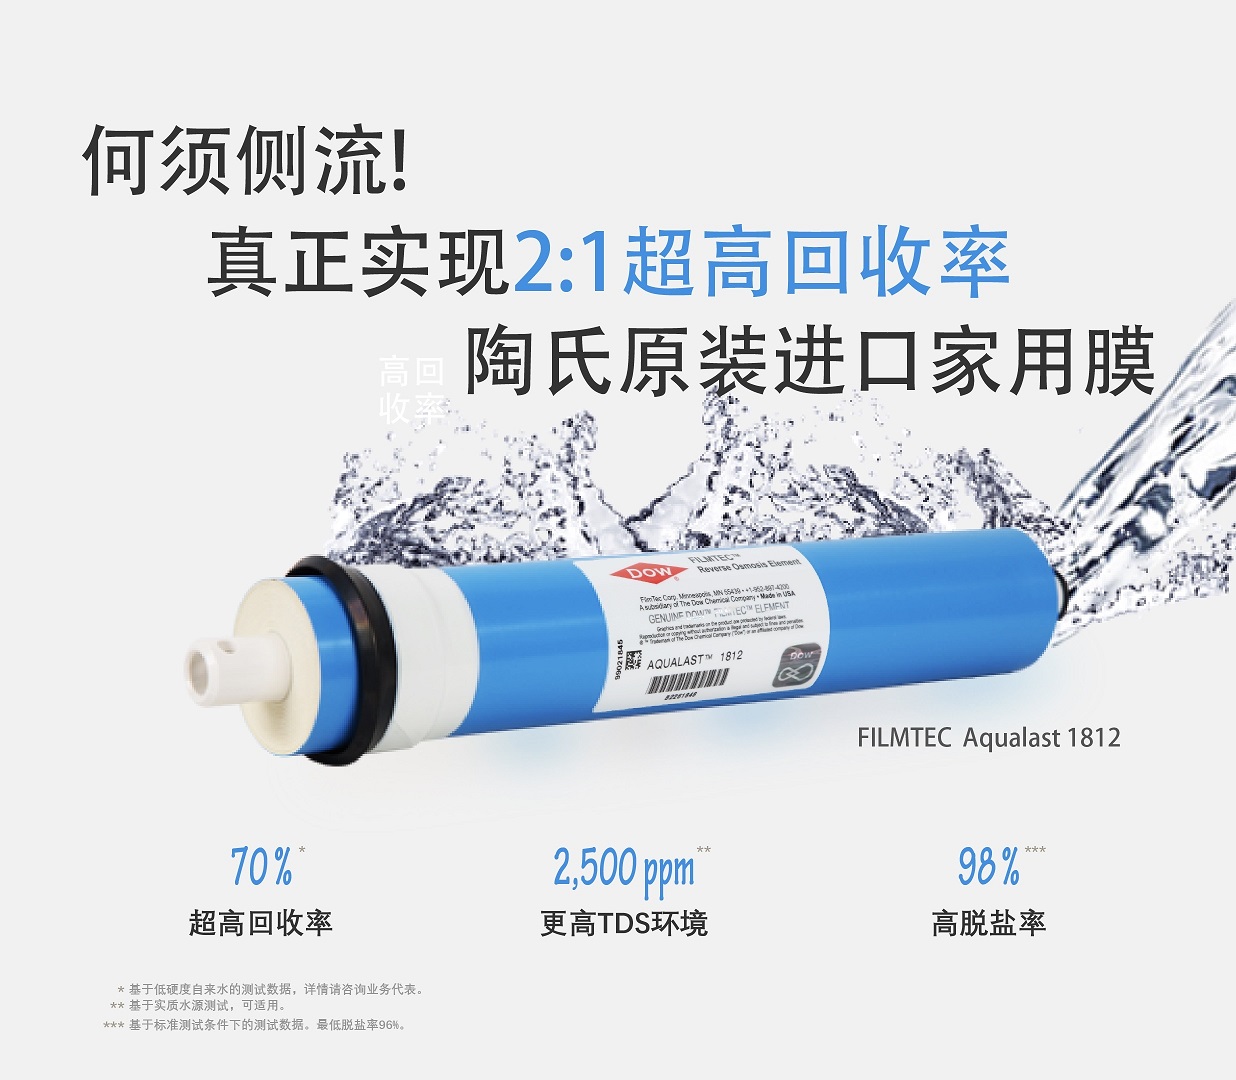 陶氏新一代AQUALAST™ 1812节水型家用反渗透膜元件登陆中国市场